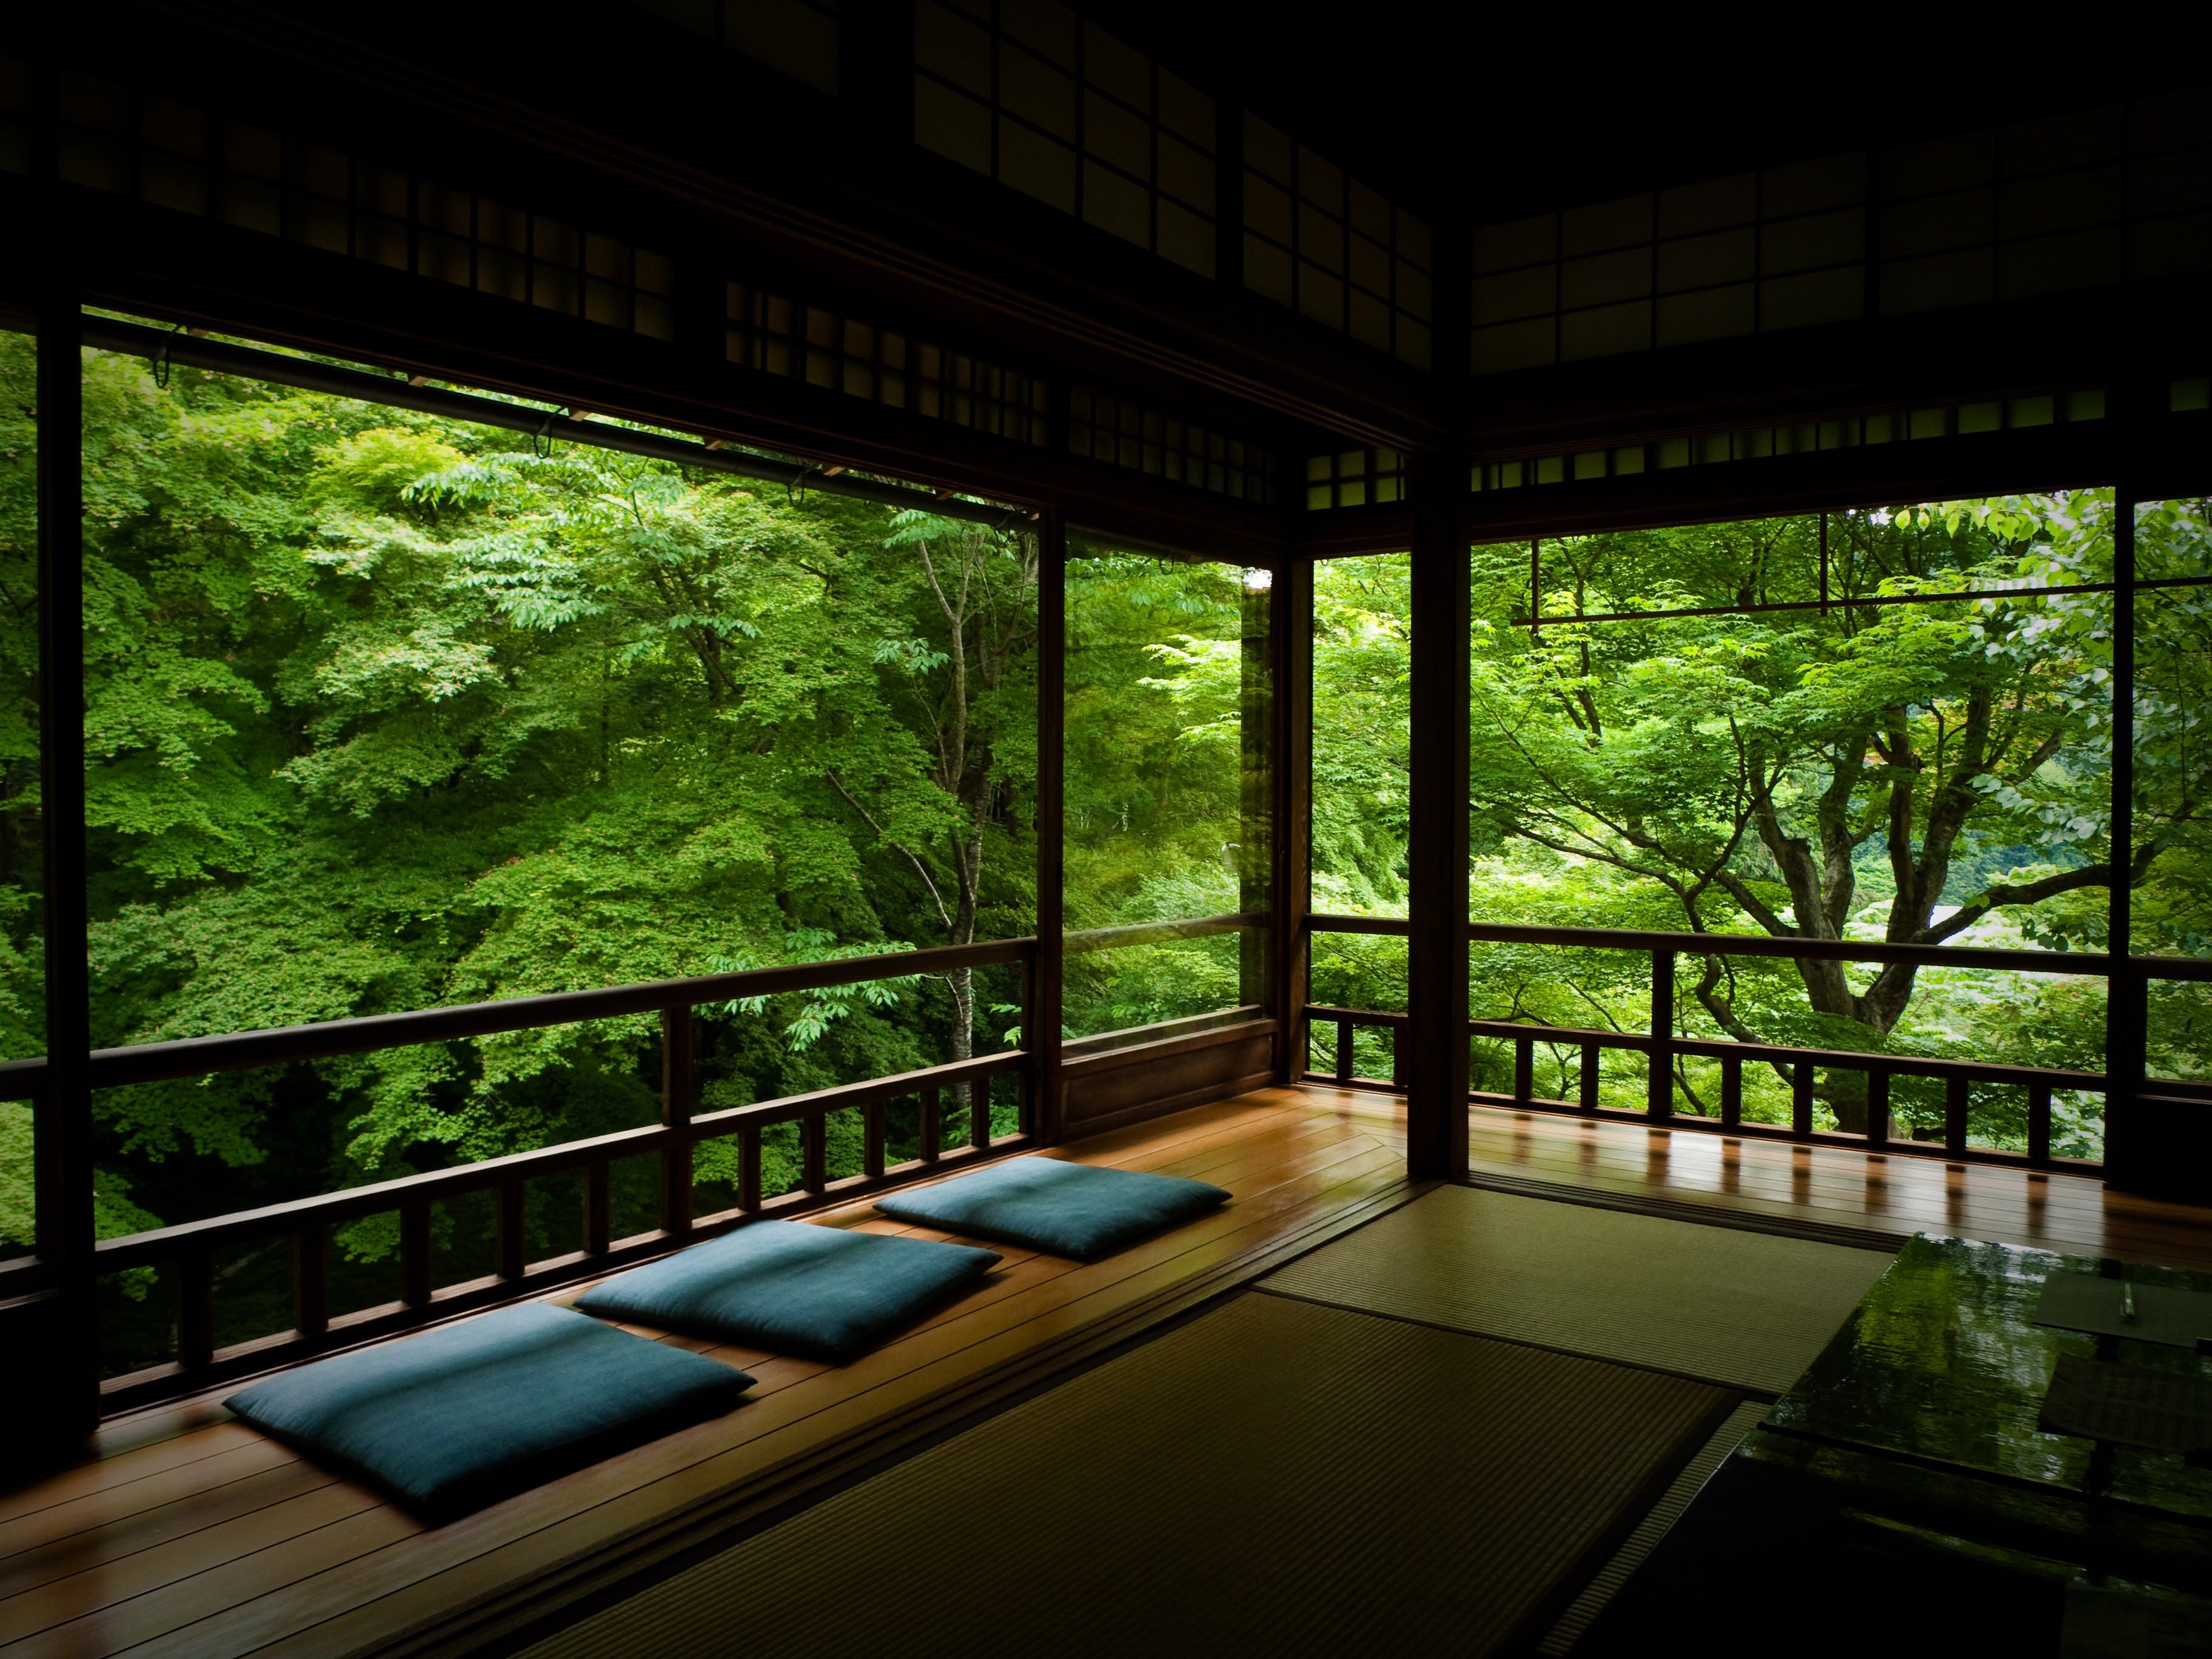 Japanese Tea Room [3648x2736]